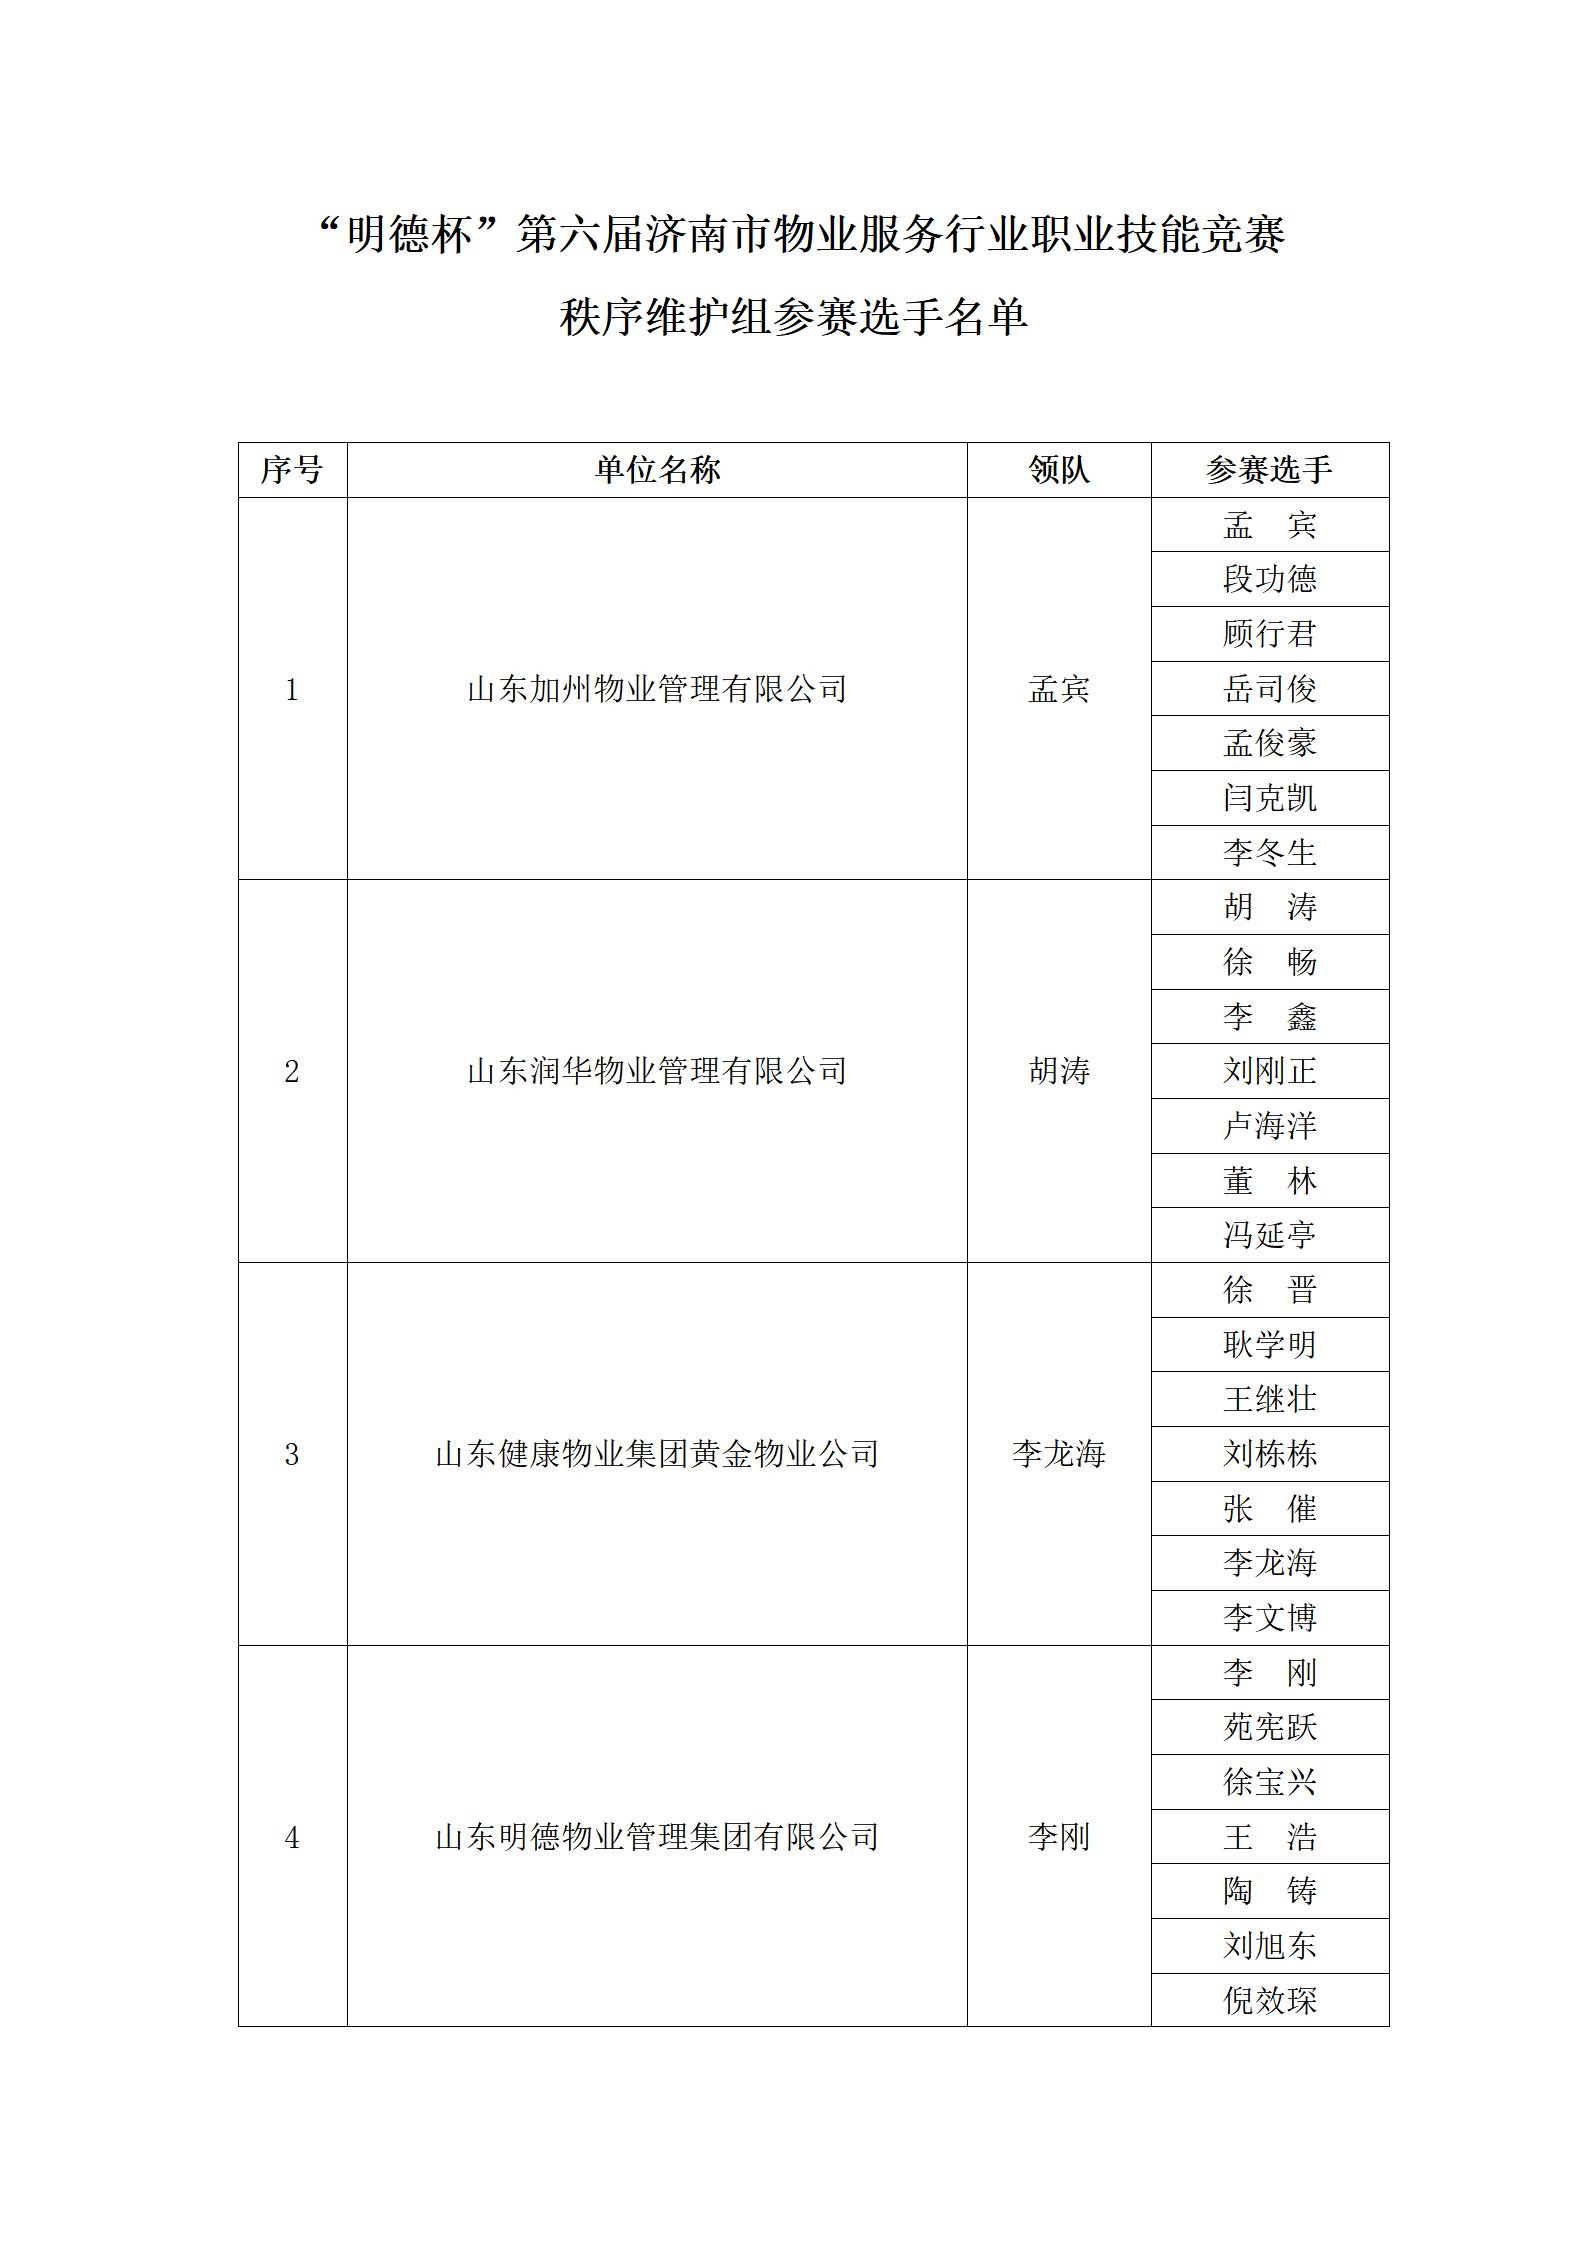 关于“明德杯”第六届济南市物业服务行业职业技能竞赛选手名单的公示_17